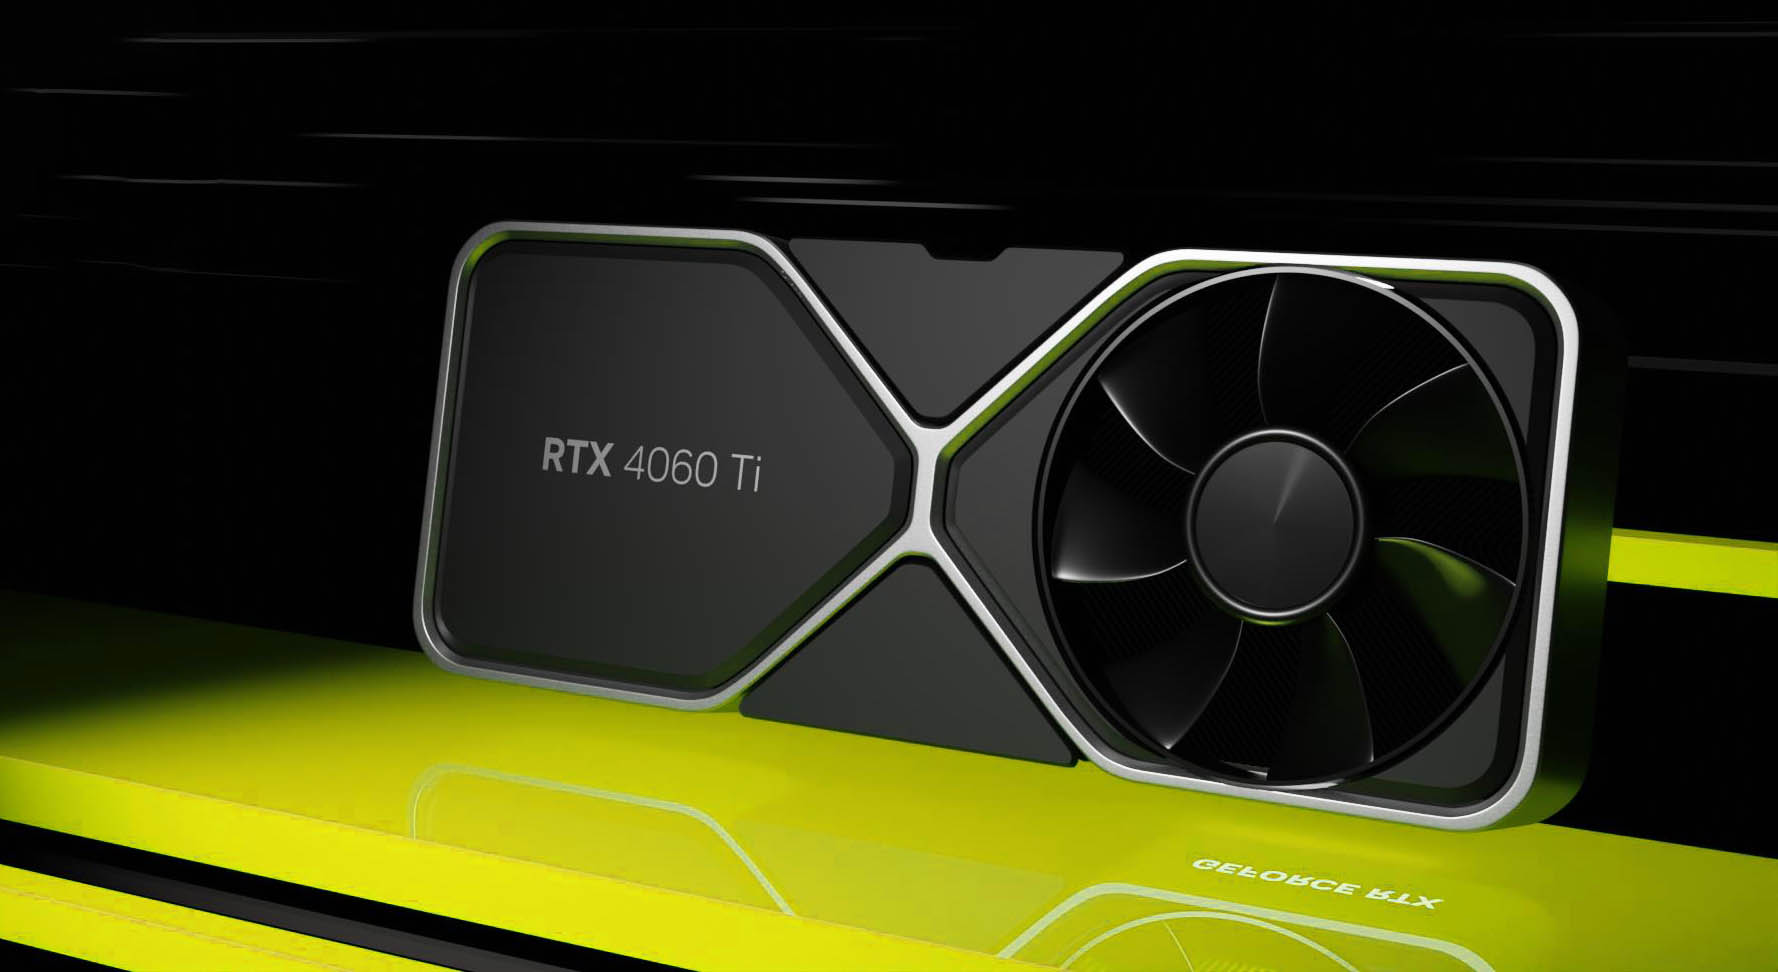 NVIDIA GeForce RTX 4060 Ti mit 8/16 GB VRAM, 4352 CUDA Kernen, 288 GB/s Bandbreite und bis zu 165 W TDP